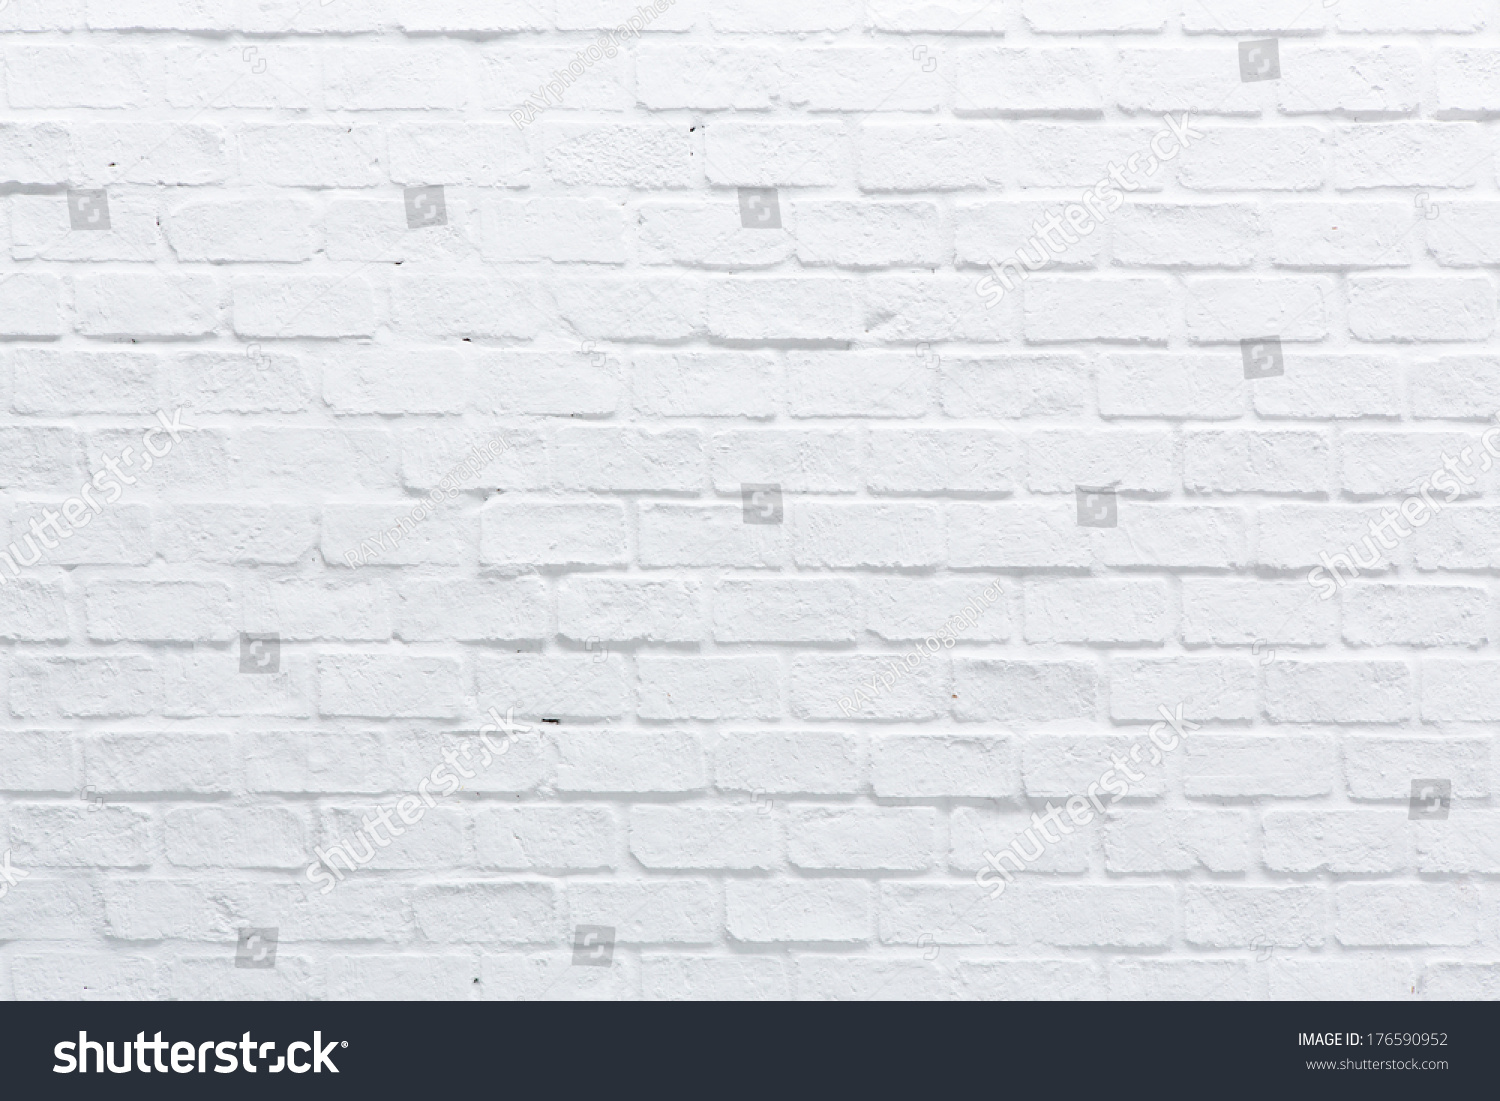 White Brick Wall Stock Photo 176590952 | Shutterstock